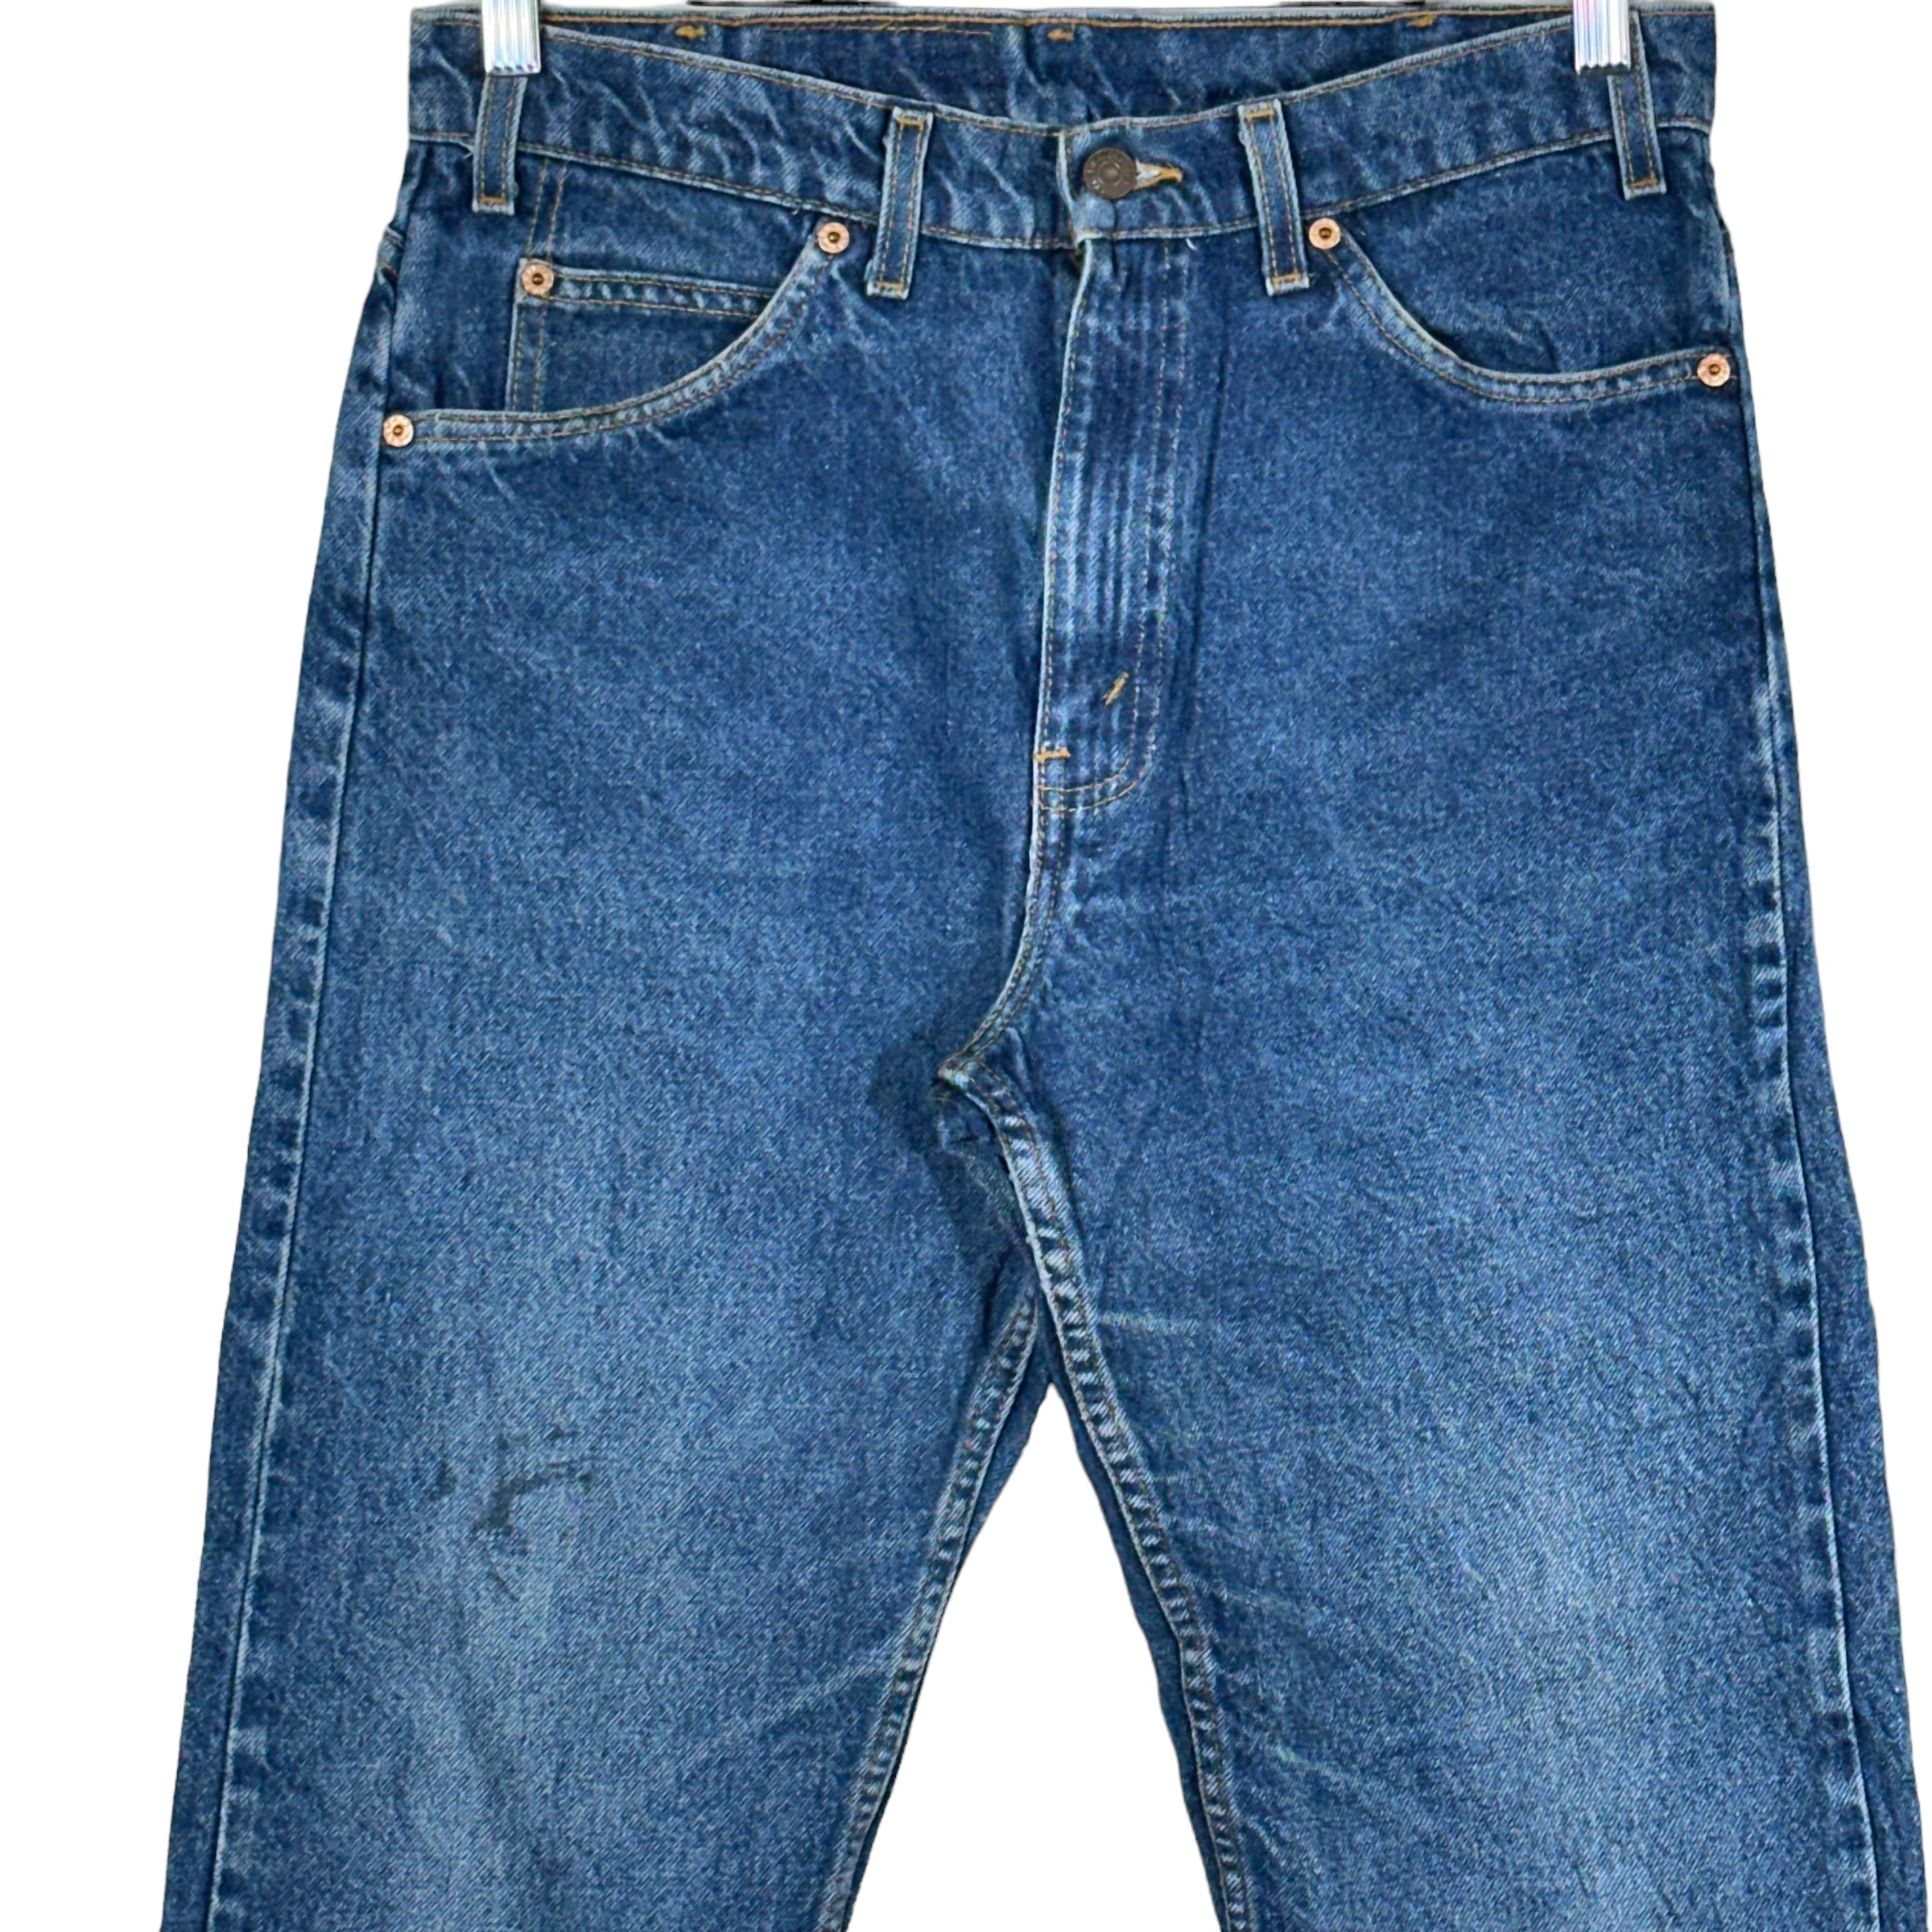 Vintage Levi's 505 Paisley Pocket Denim Jeans 90s